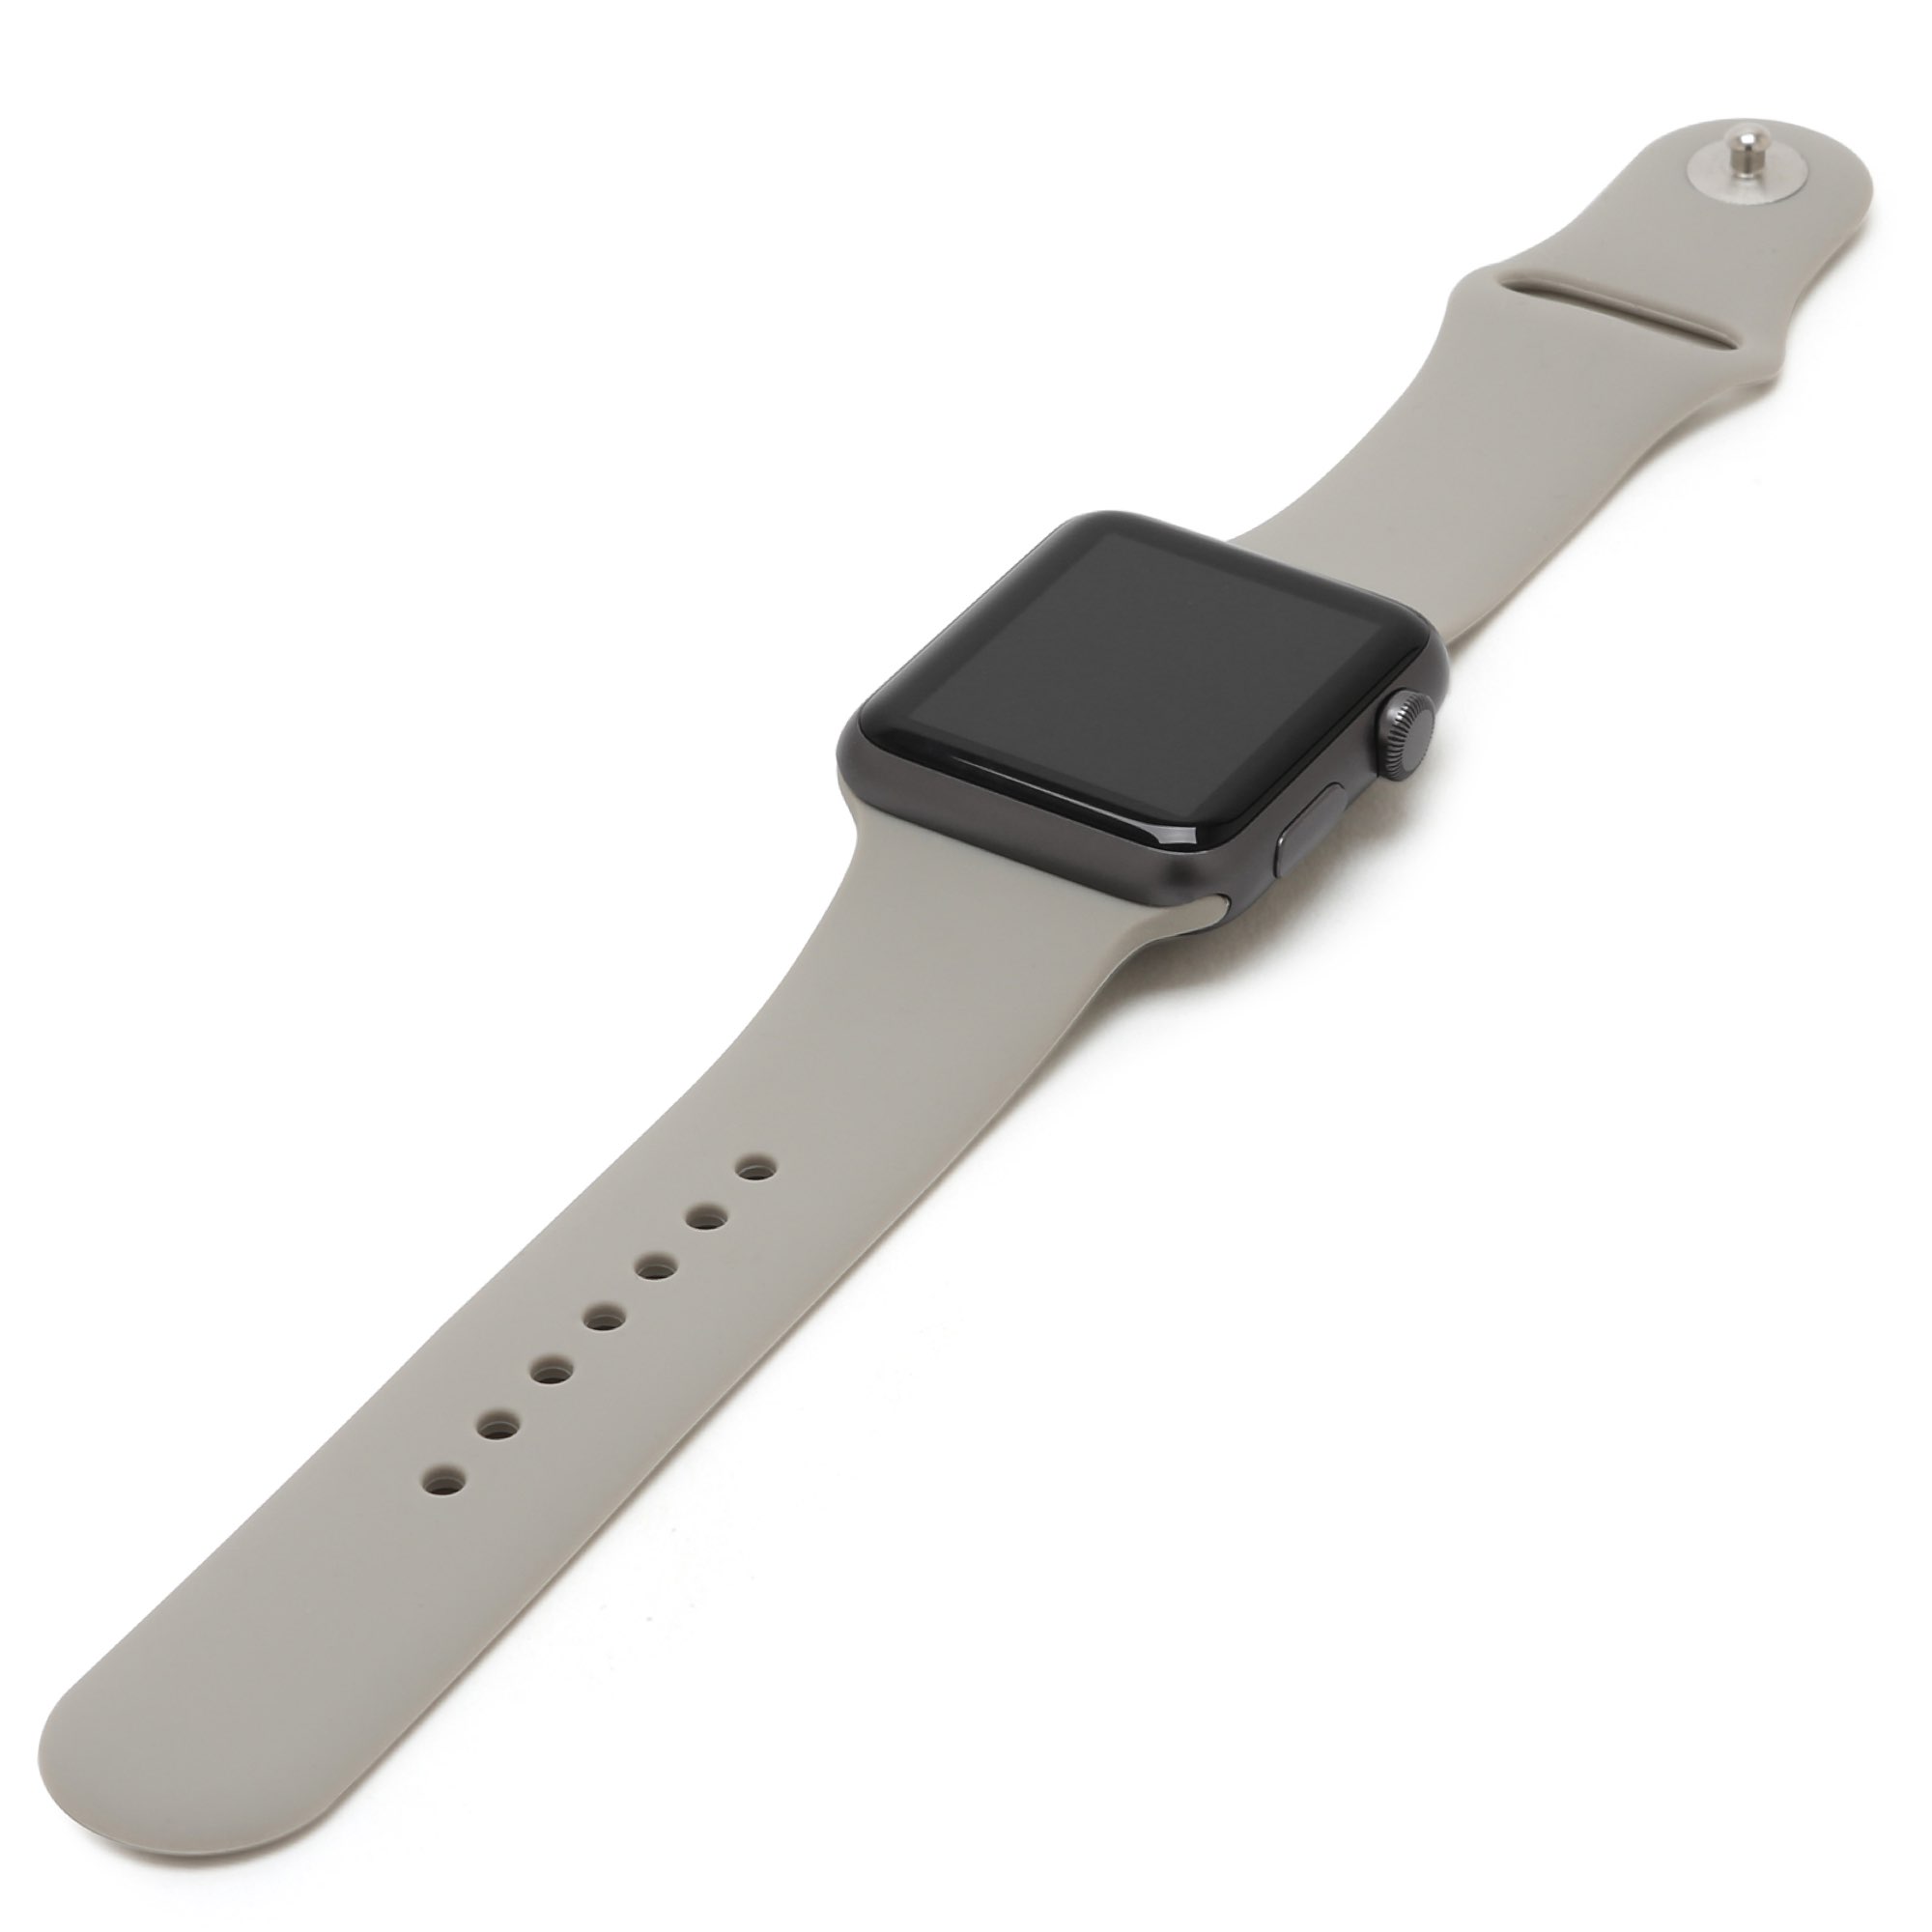 Apple watch ремешок оригинал купить. Ремешок для Эппл вотч силиконовый. Ремешок АПЛ вотч. Ремешок на АПЛ вотч силиконовый. Спорт ремешок на Эппл вотч.